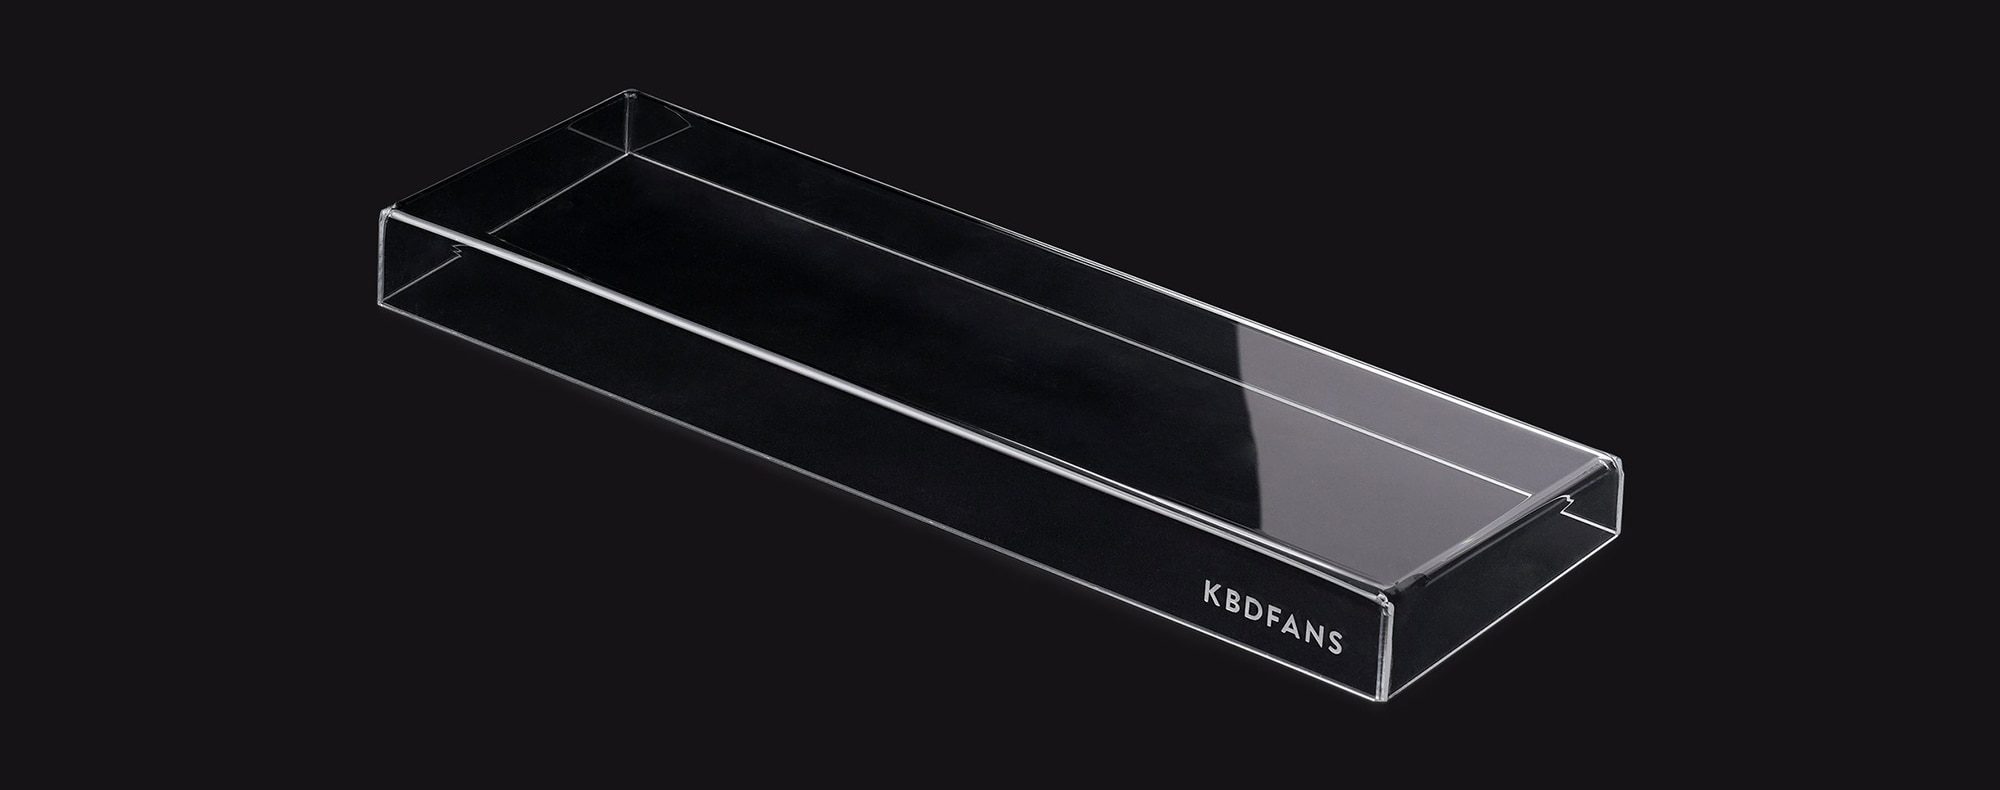 KBDfans 60% 65% 75% Acrylic Anti-dust Keyboard Cover